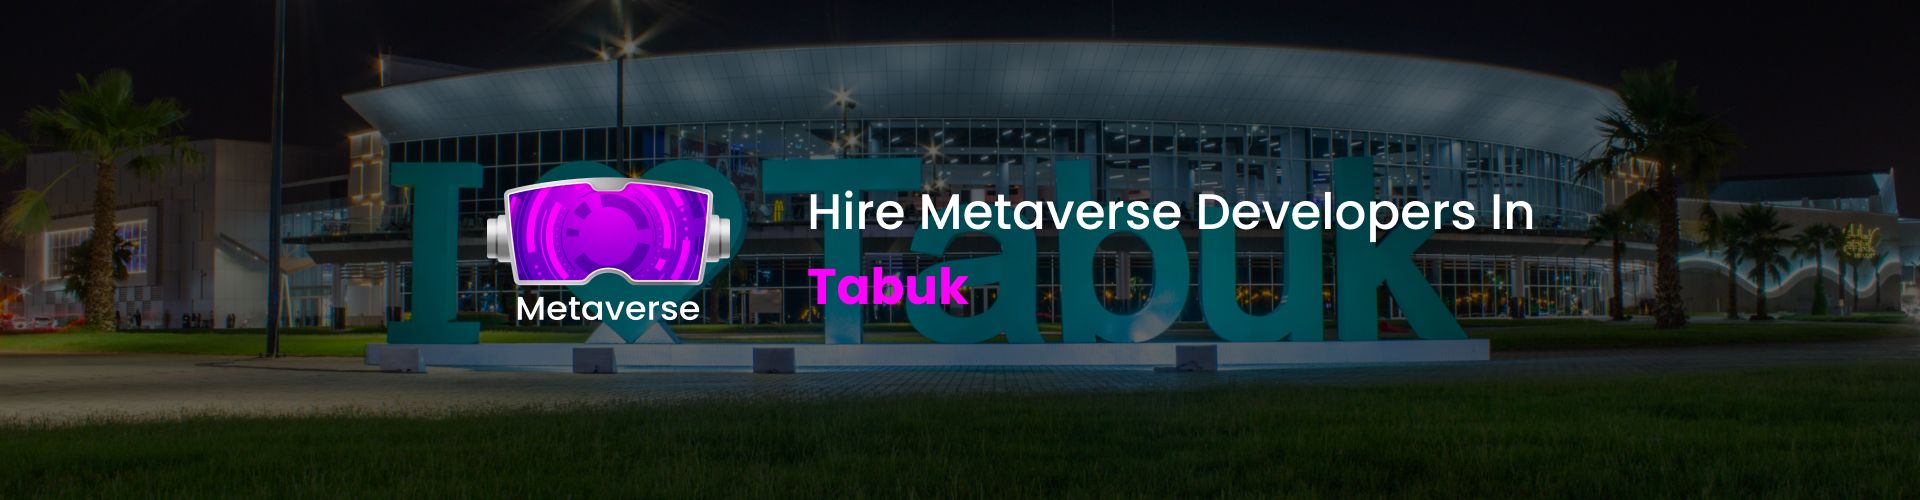 metaverse developers in tabuk